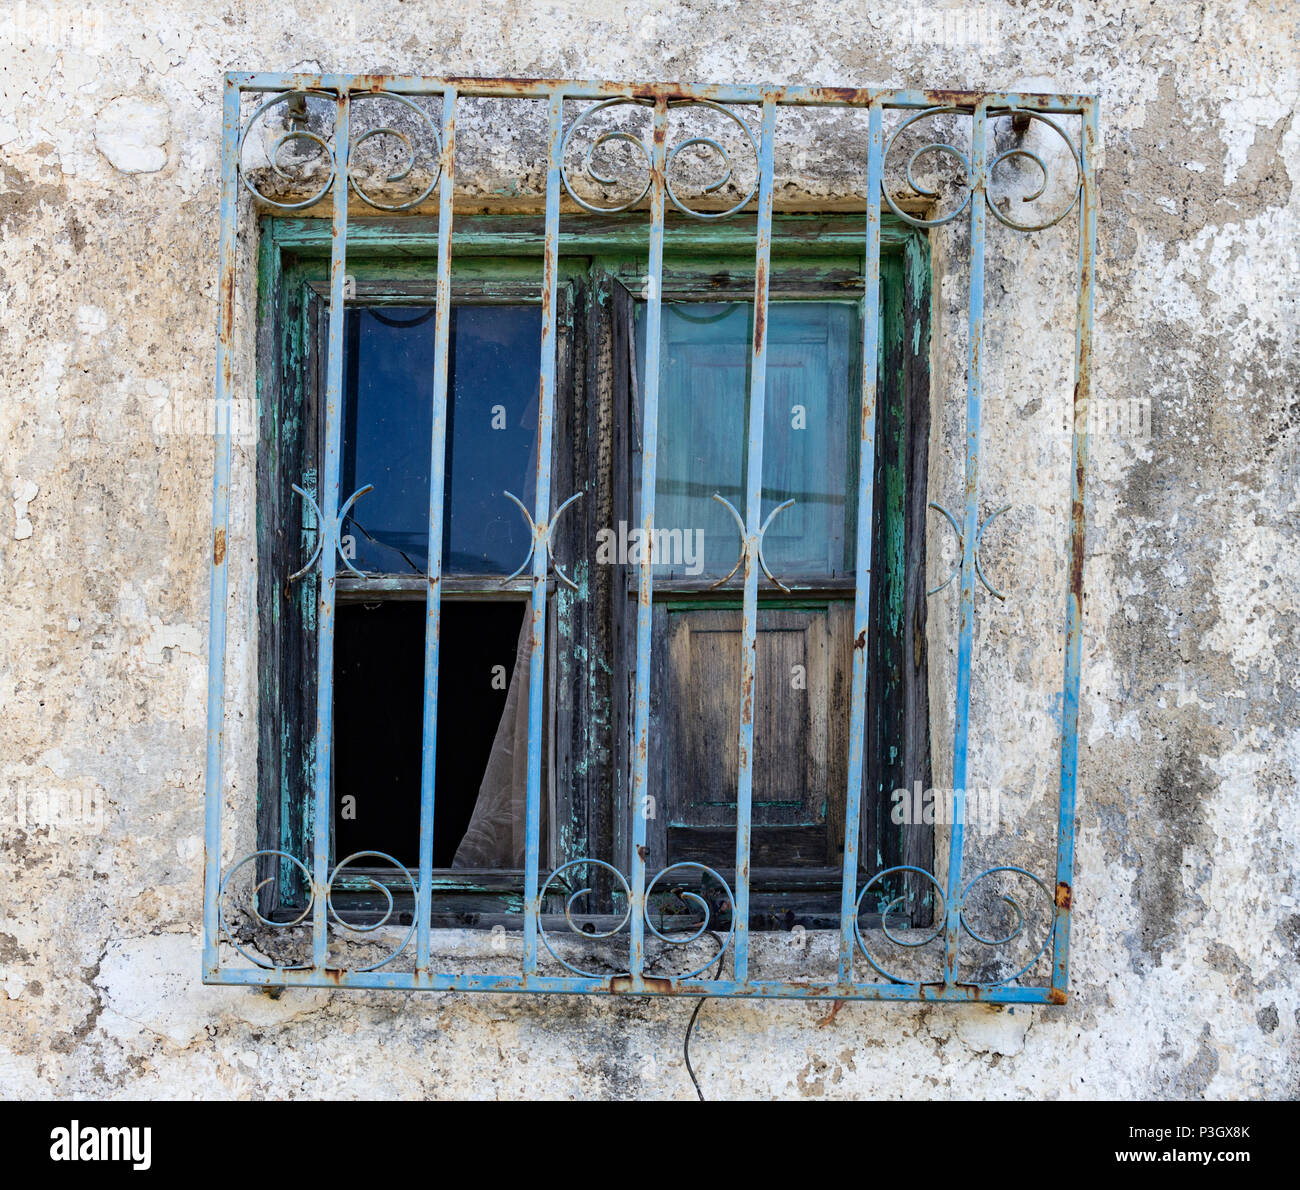 Bügeleisen Schutzgitter am Fenster der alten Gebäude mit gebrochenen Fenster  Stockfotografie - Alamy